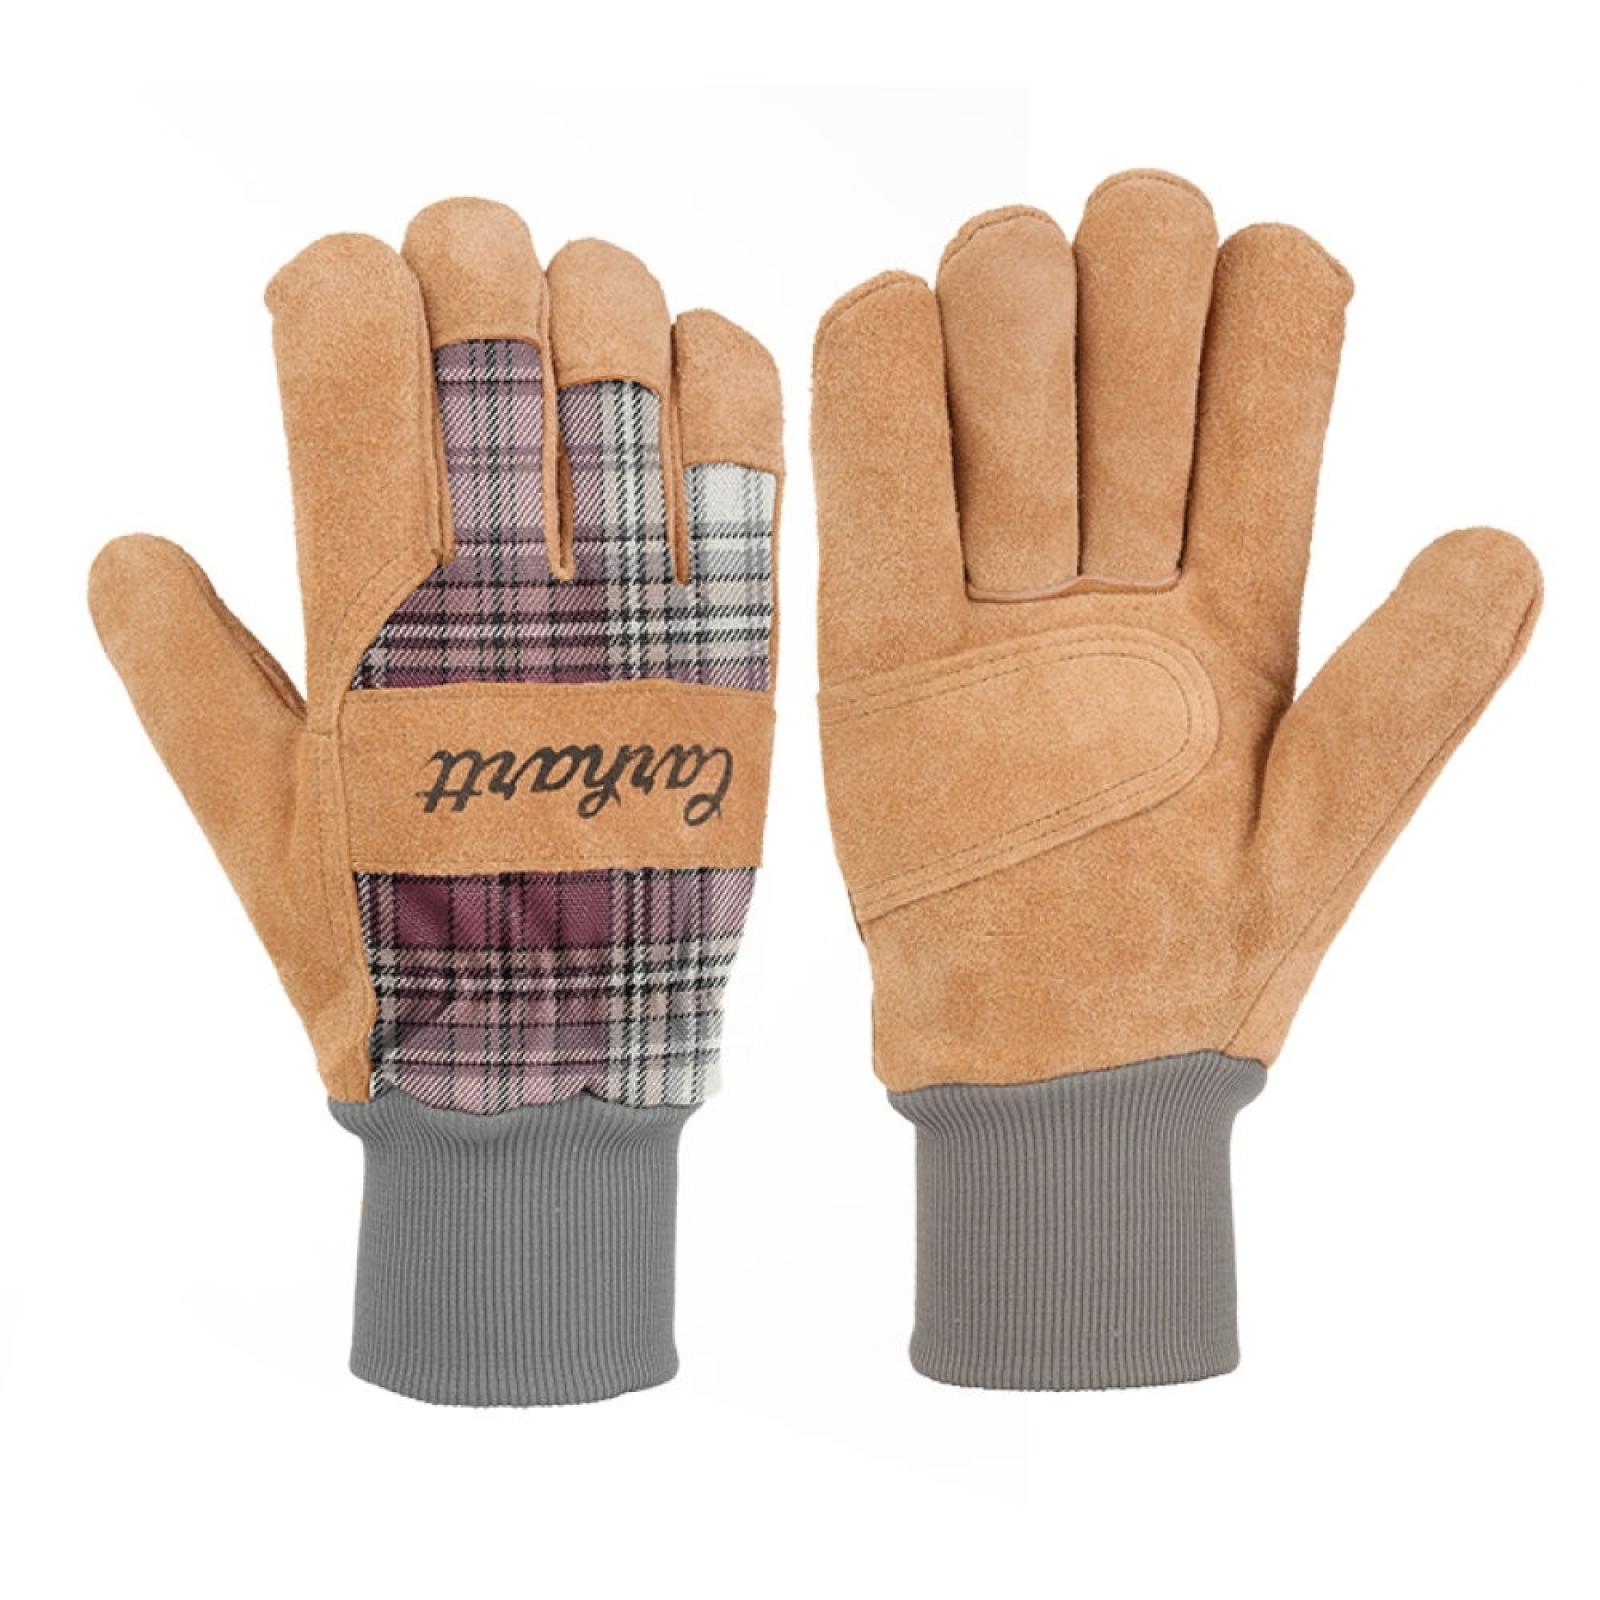 Carhartt Suede Knit-Cuff Work Glove